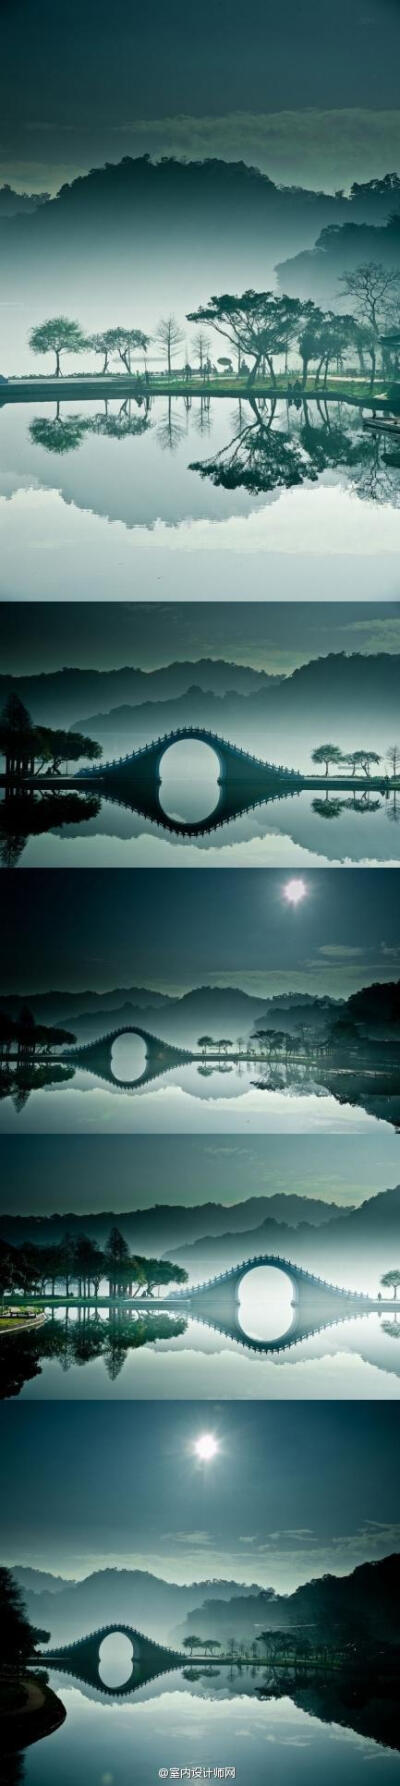 #影像世界# 如真如幻的台湾月亮桥。有机会去台湾的话，可以去看看是不是有这么美~